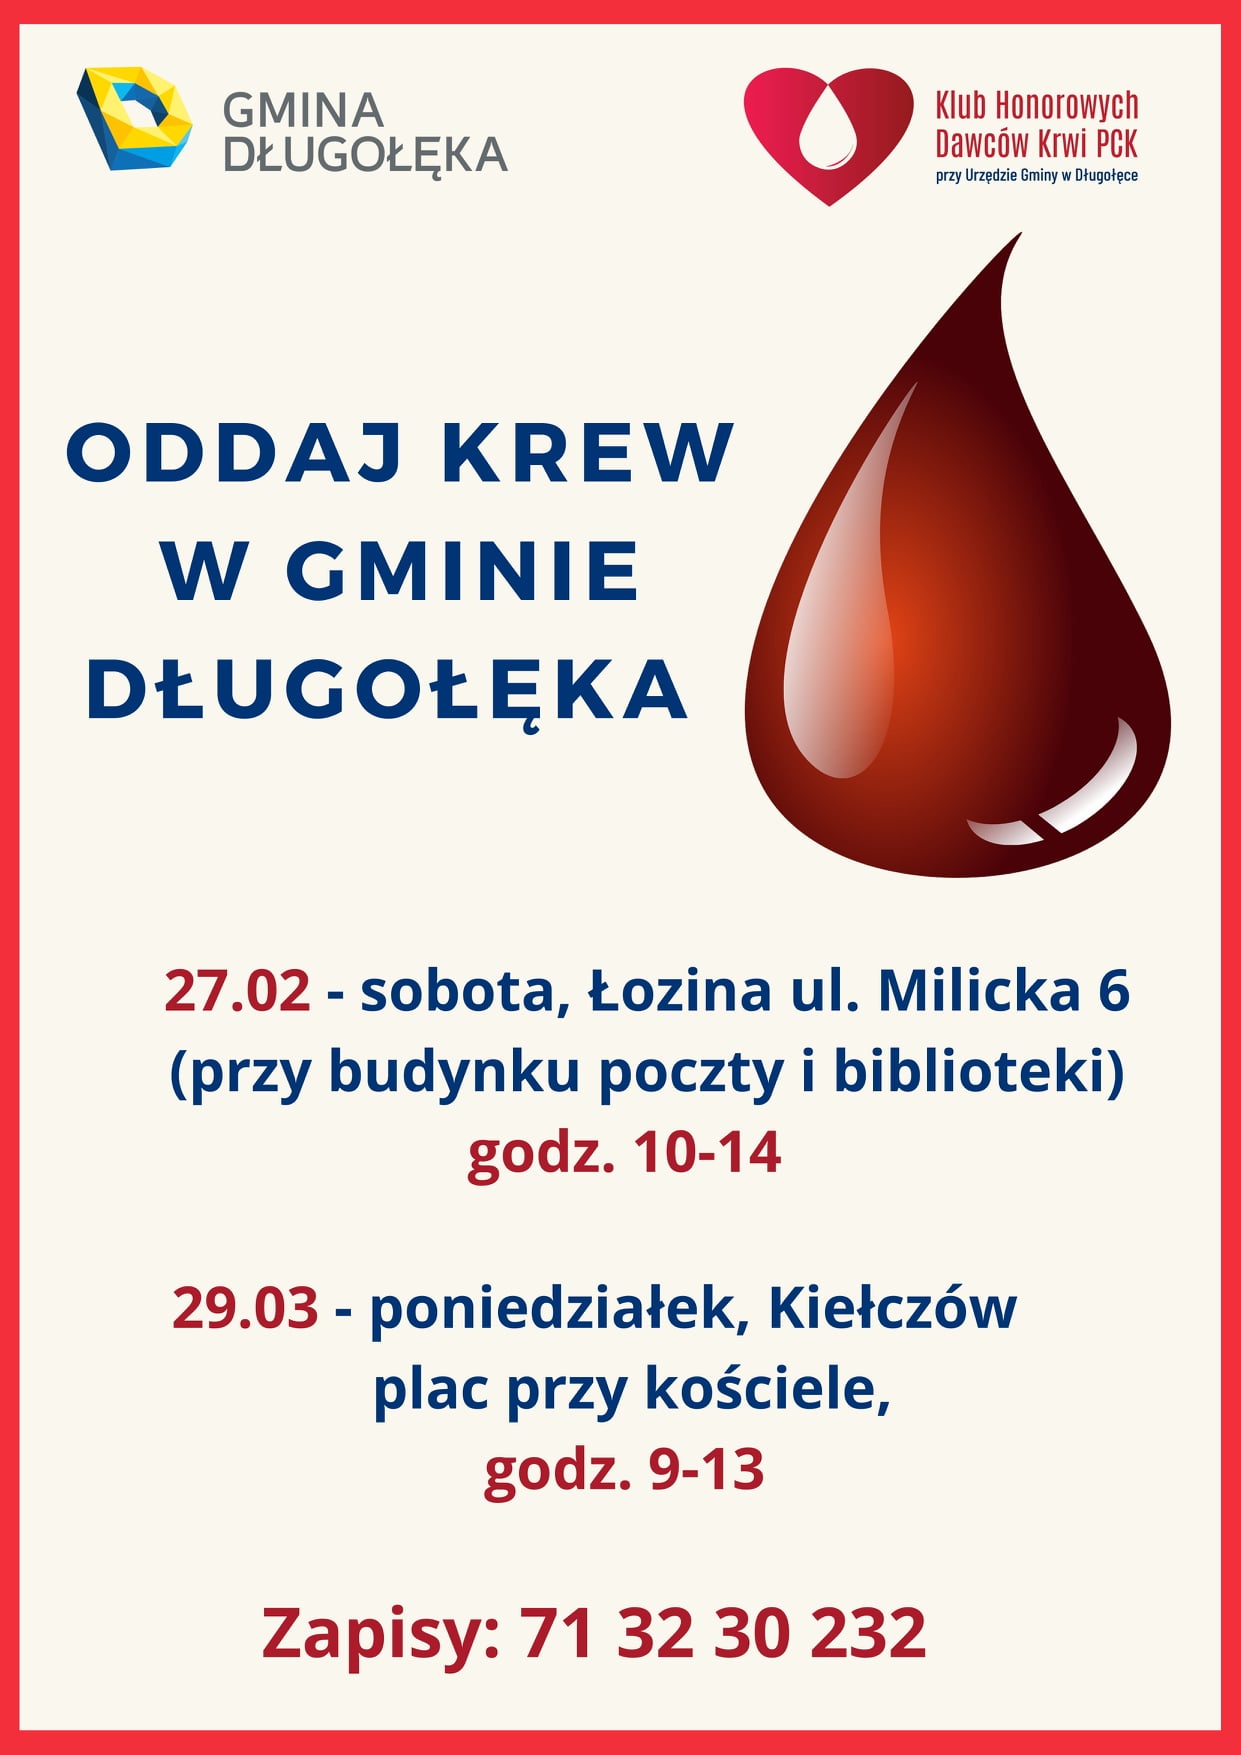 Oddaj krew w naszej gminie